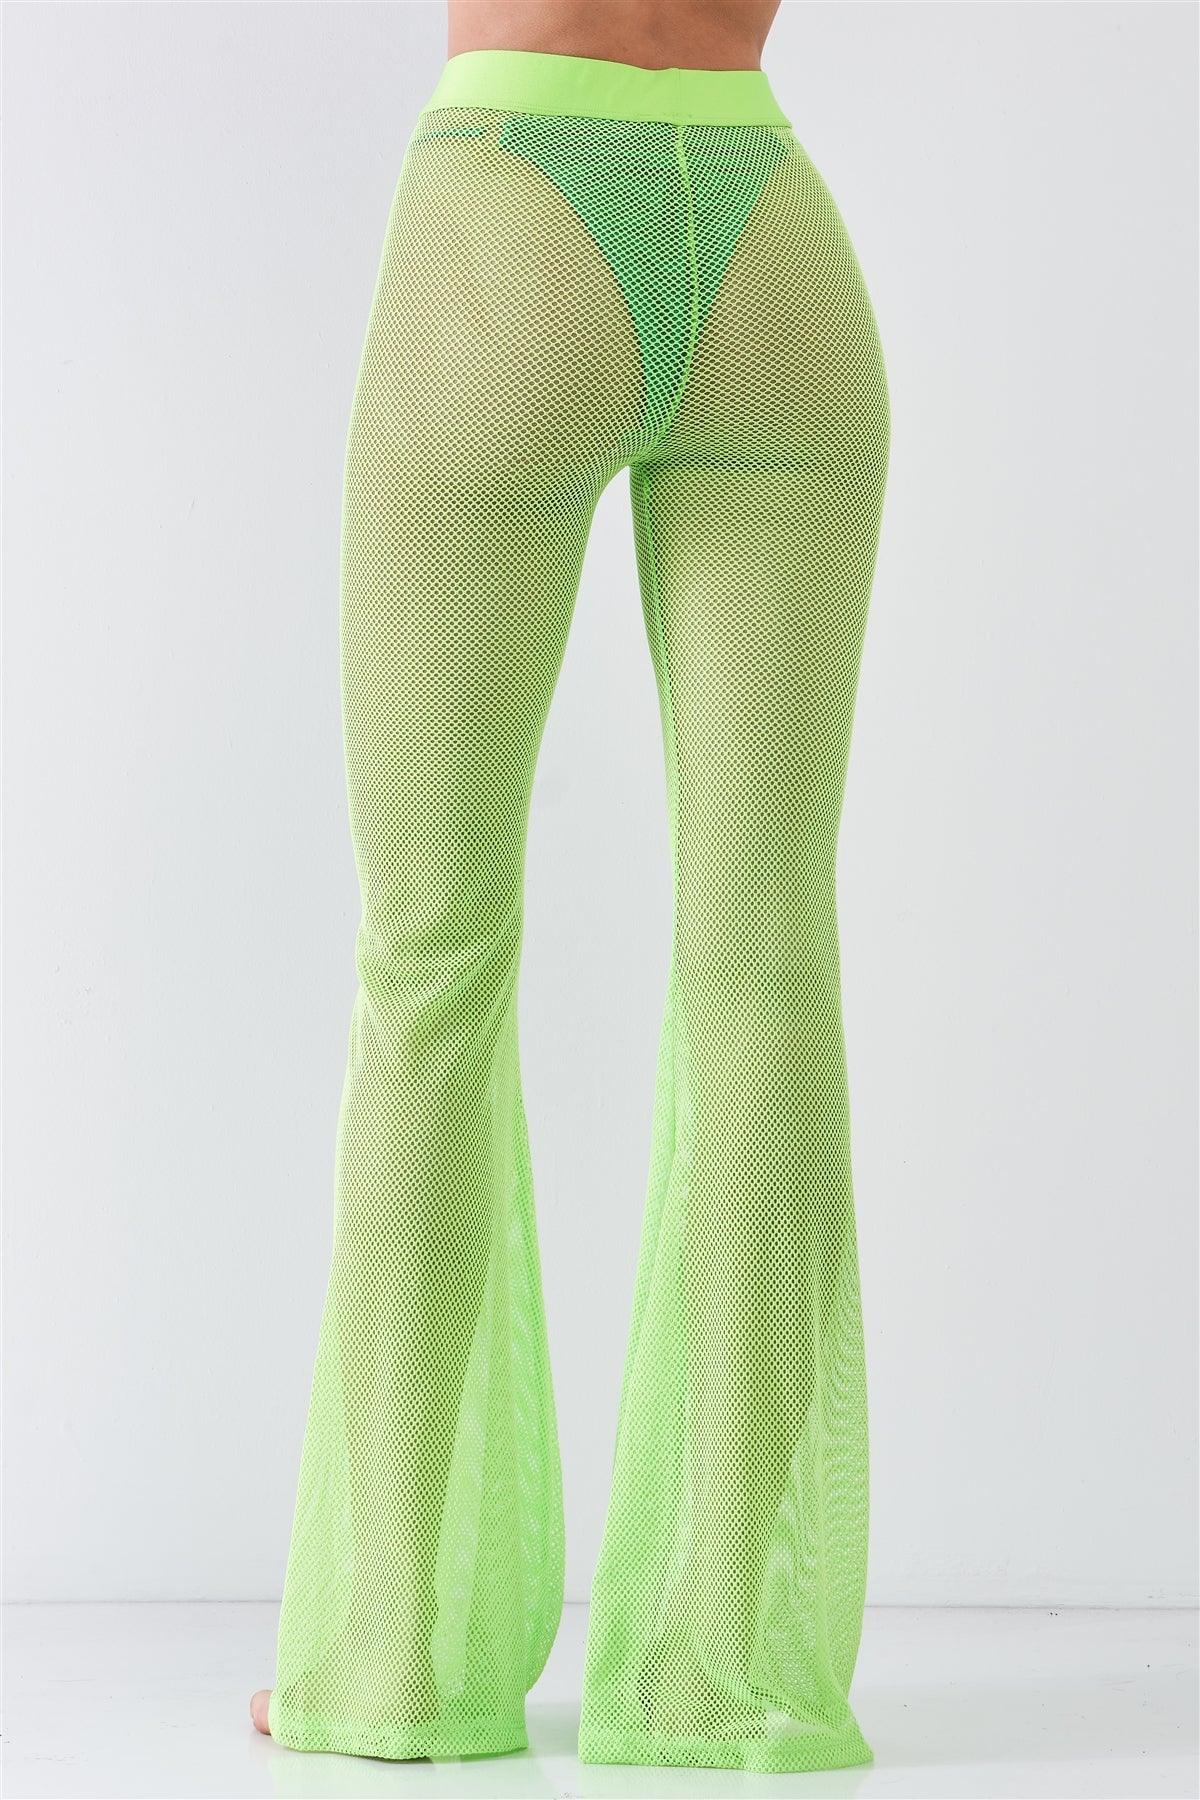 Neon Green Sheer Tennis Net Mesh High Waist Bell Bottom Pants